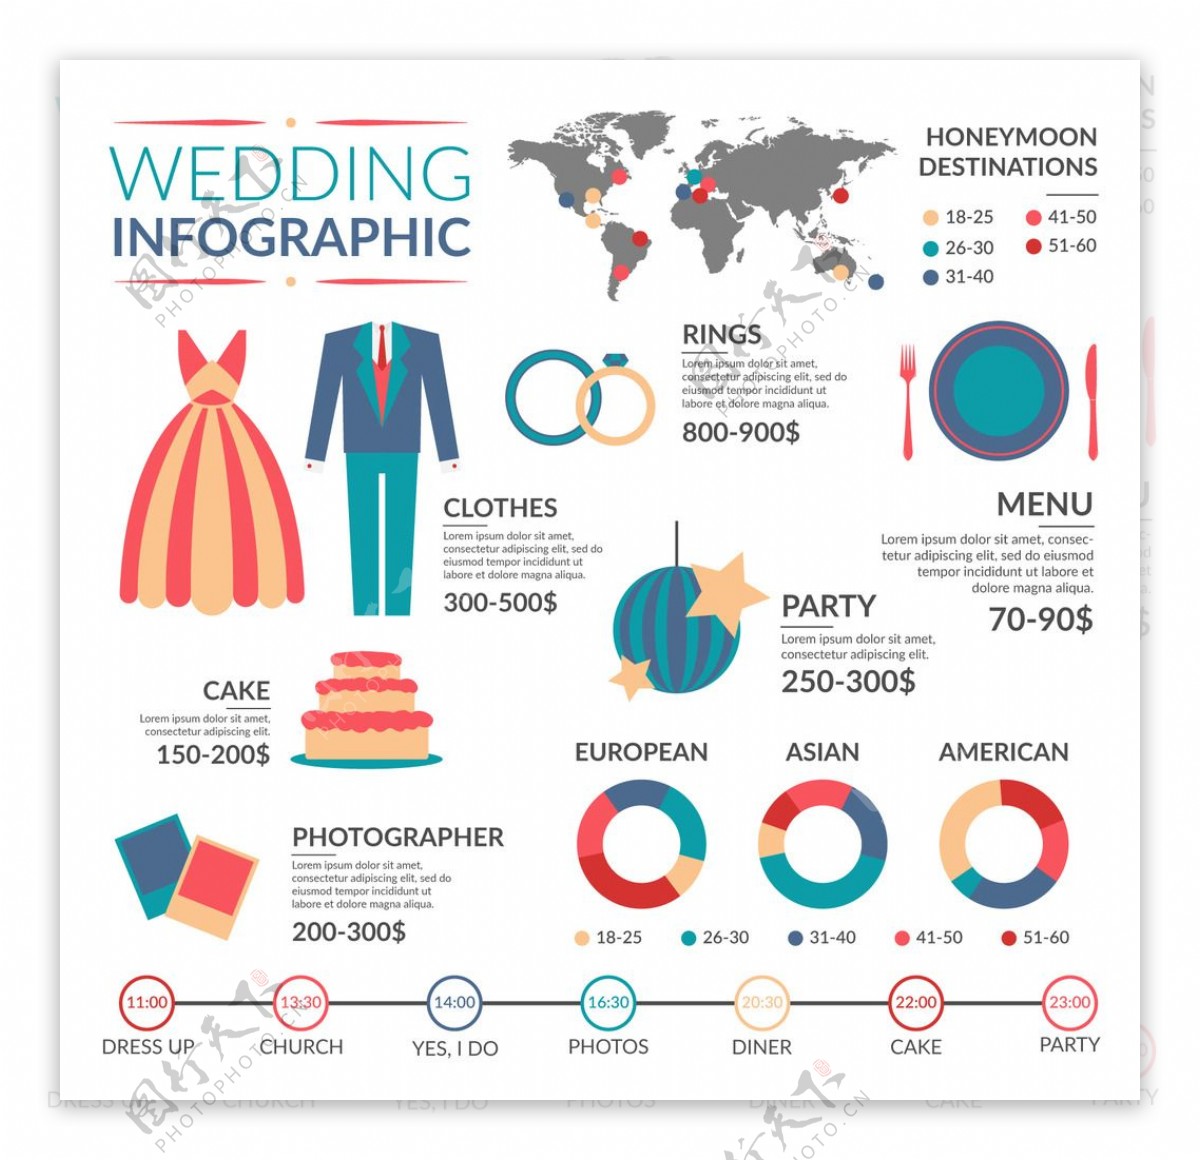 色彩的婚礼信息图表